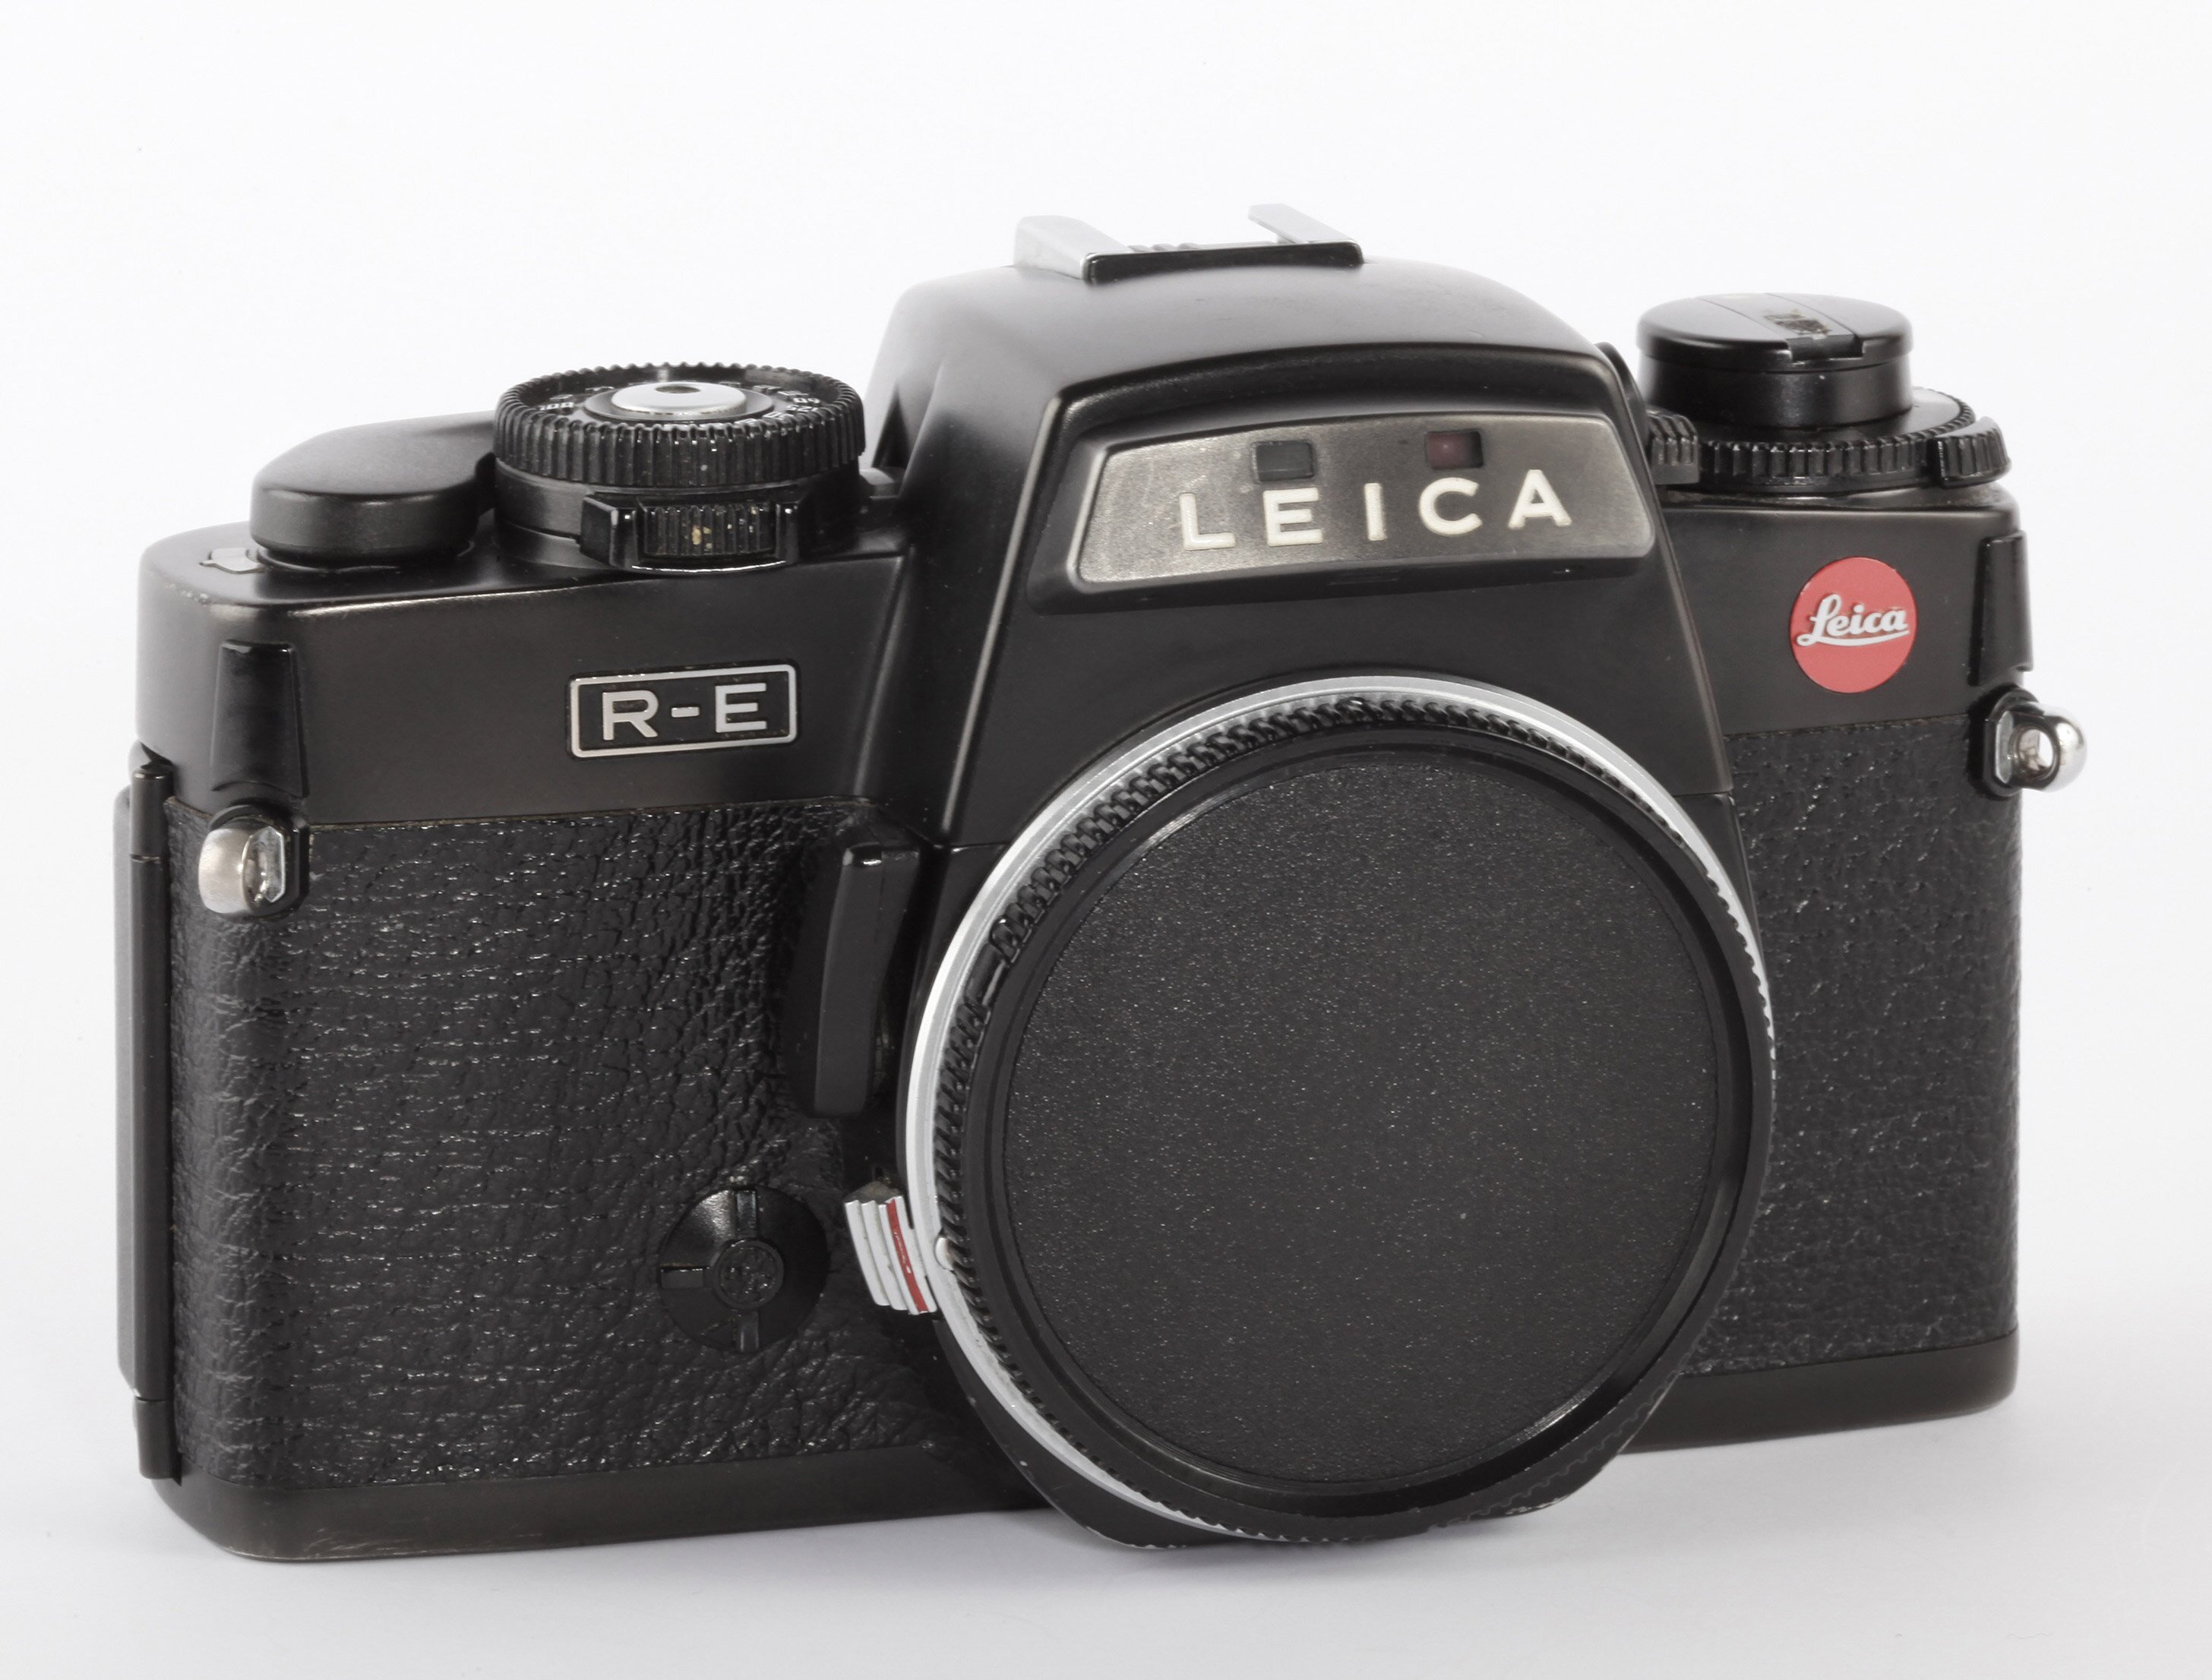 Leica R-E